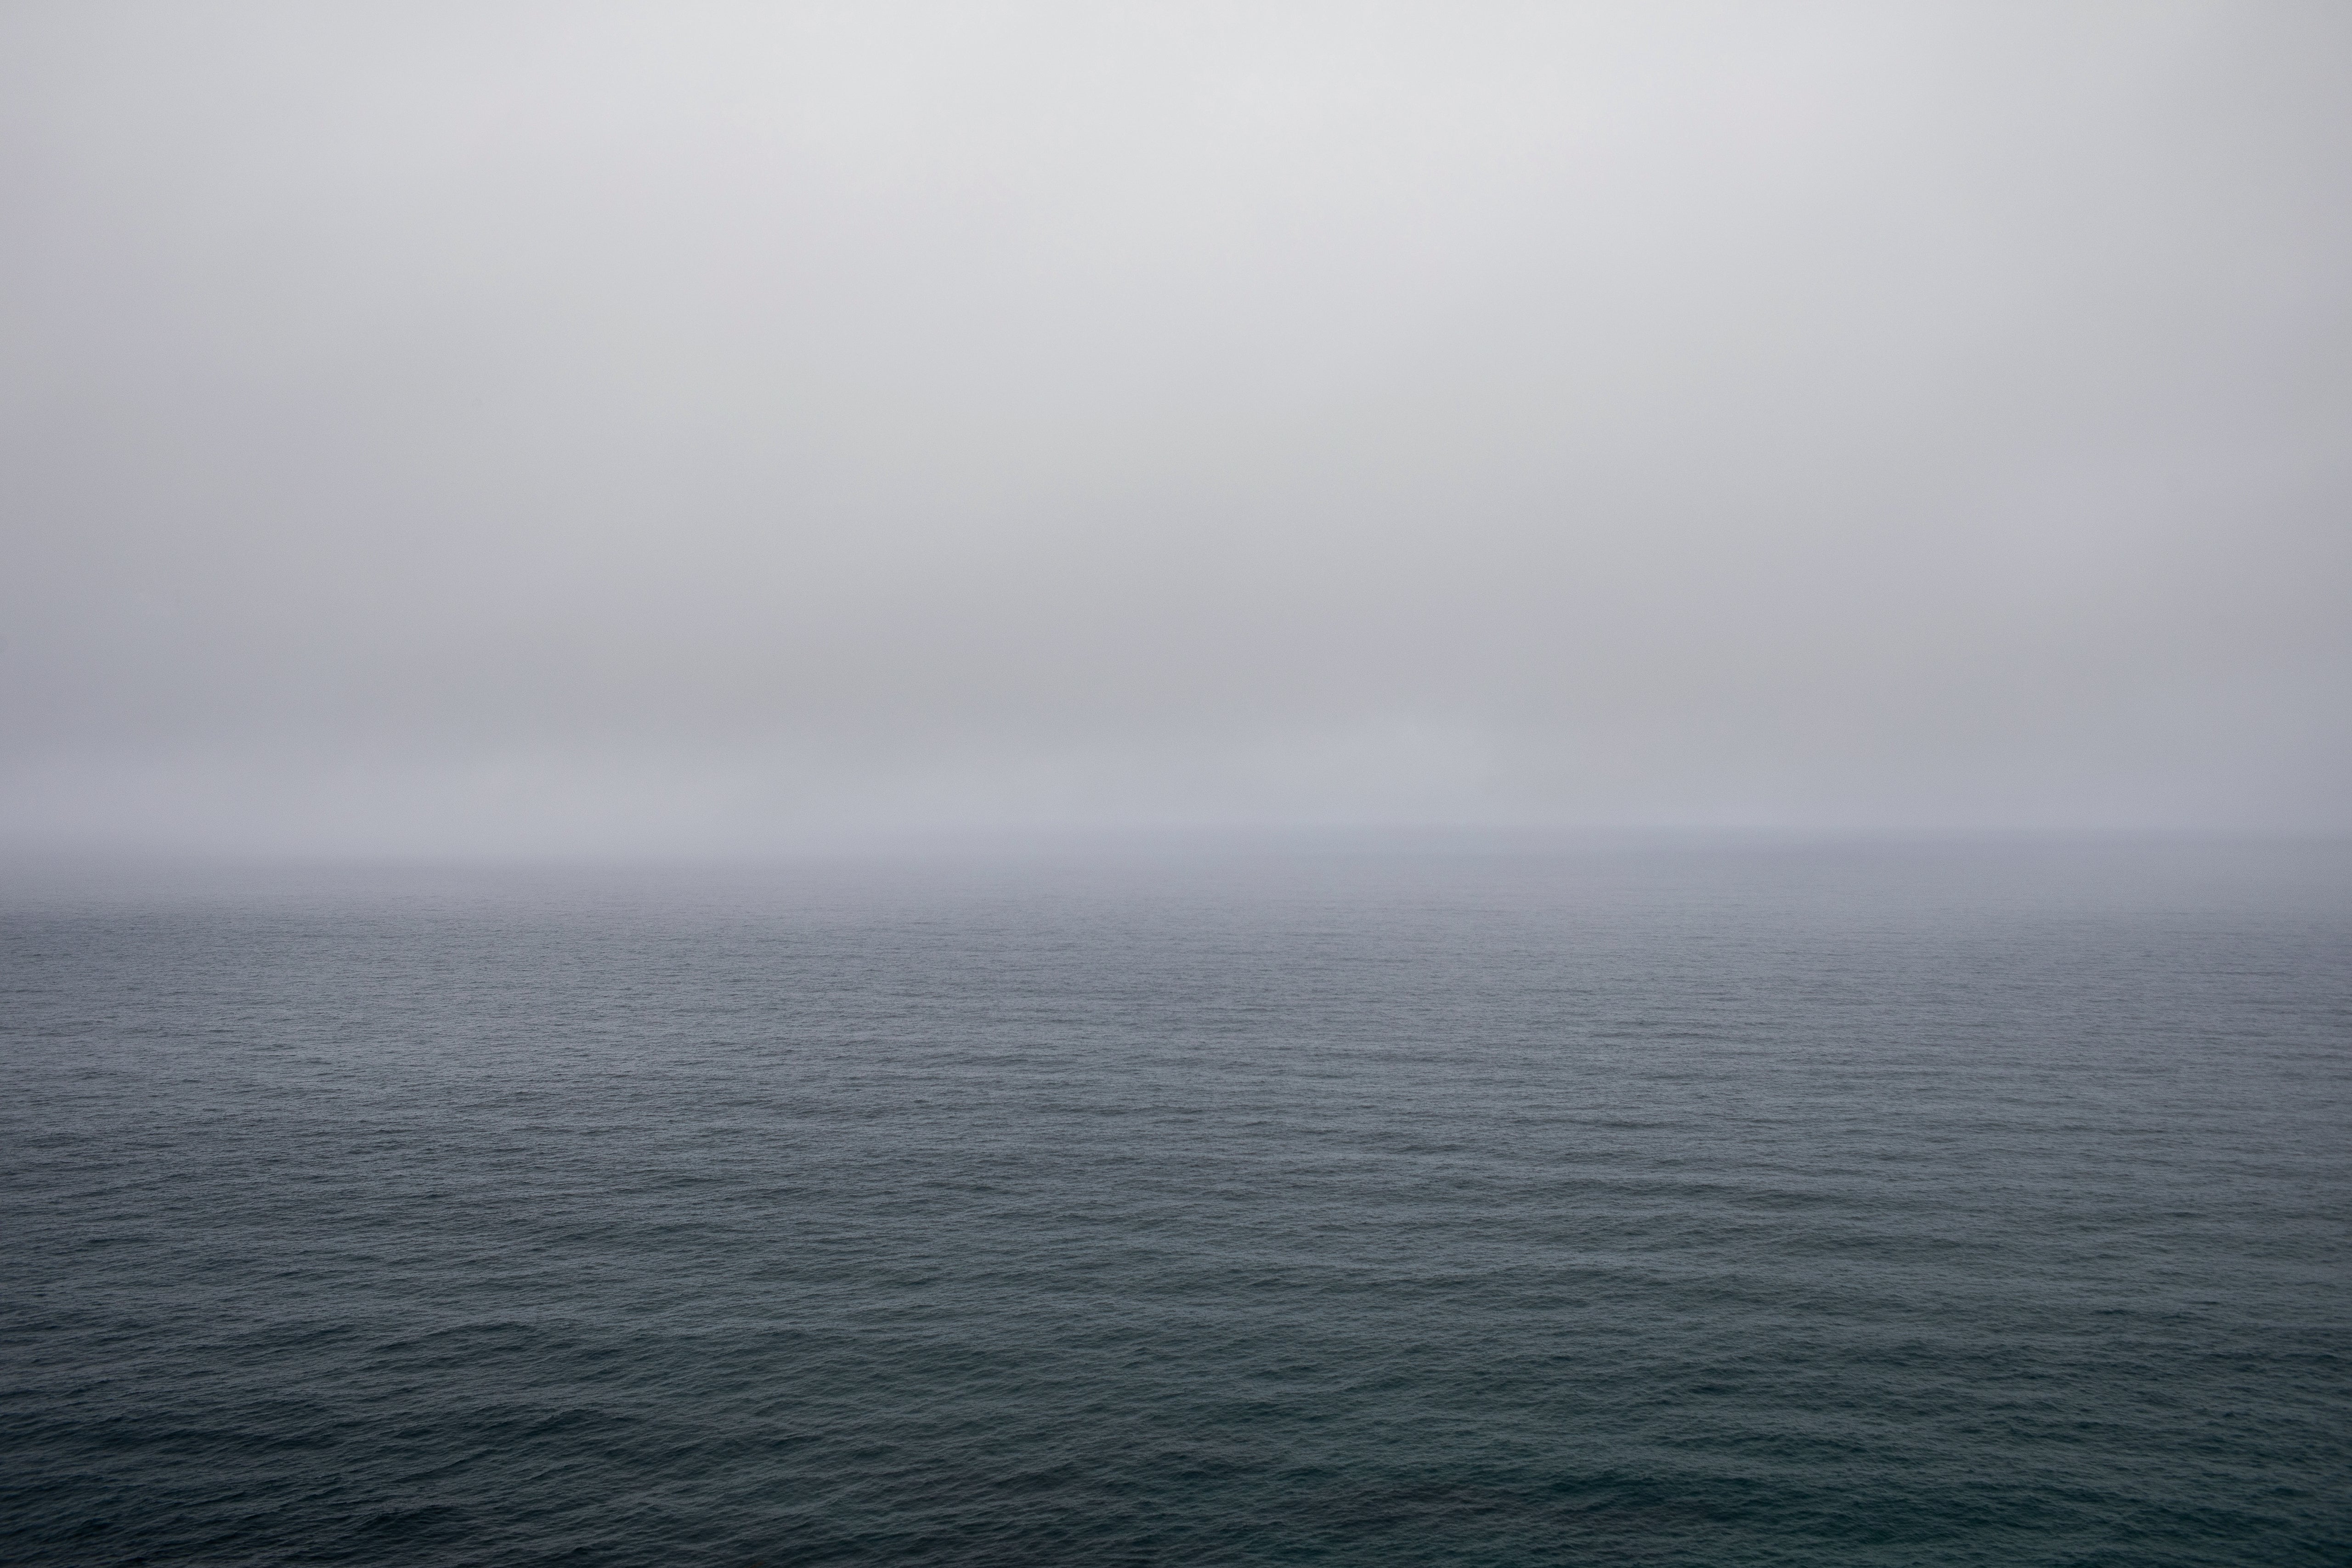 Vast Sea Fog- Horizontal